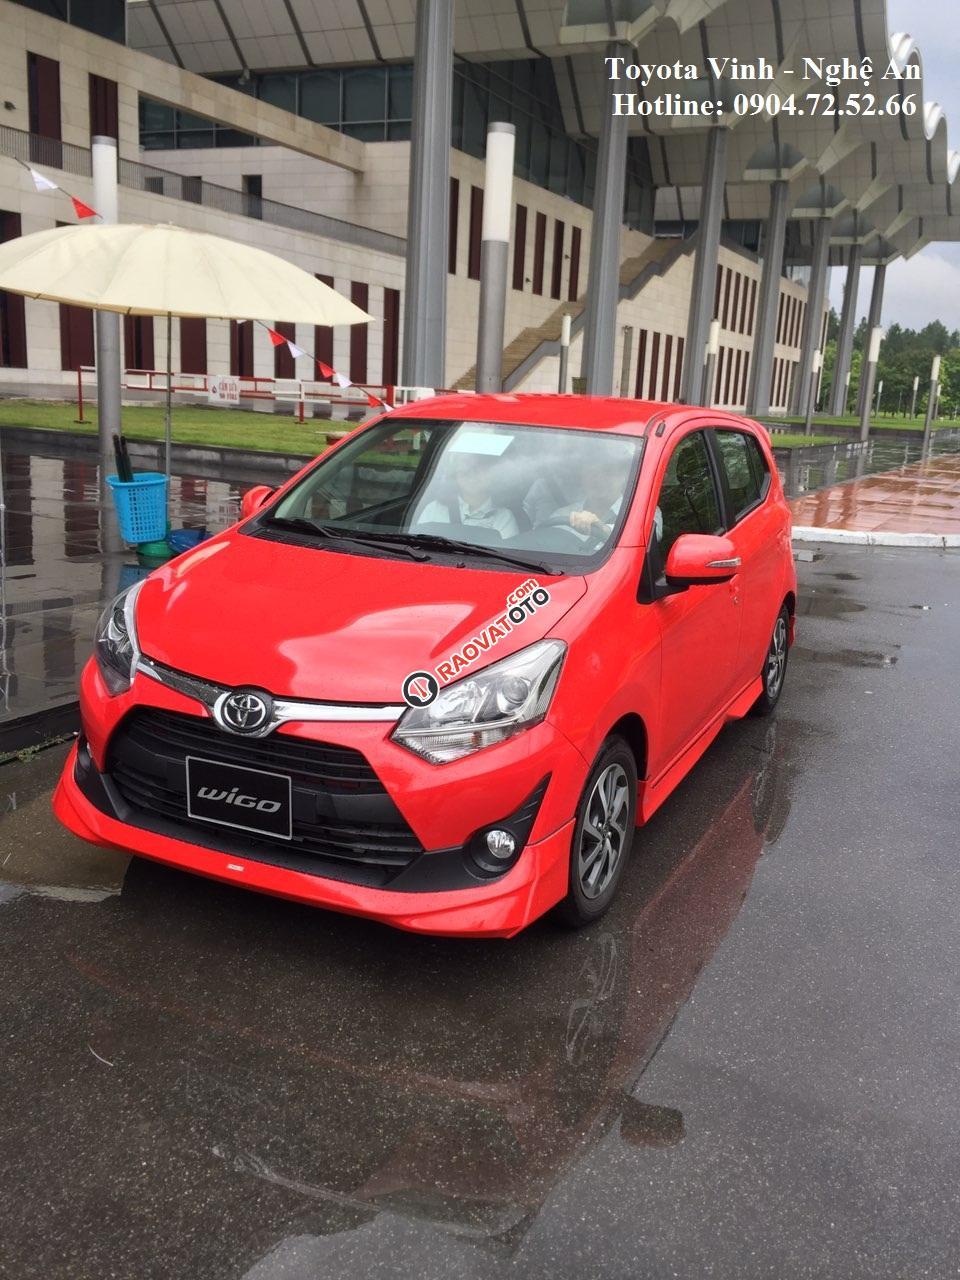 Toyota Vinh-Nghệ An-Hotline: 0904.72.52.66 - Bán xe Wigo giá tốt nhất Nghệ An, trả góp lãi suất 0%-0